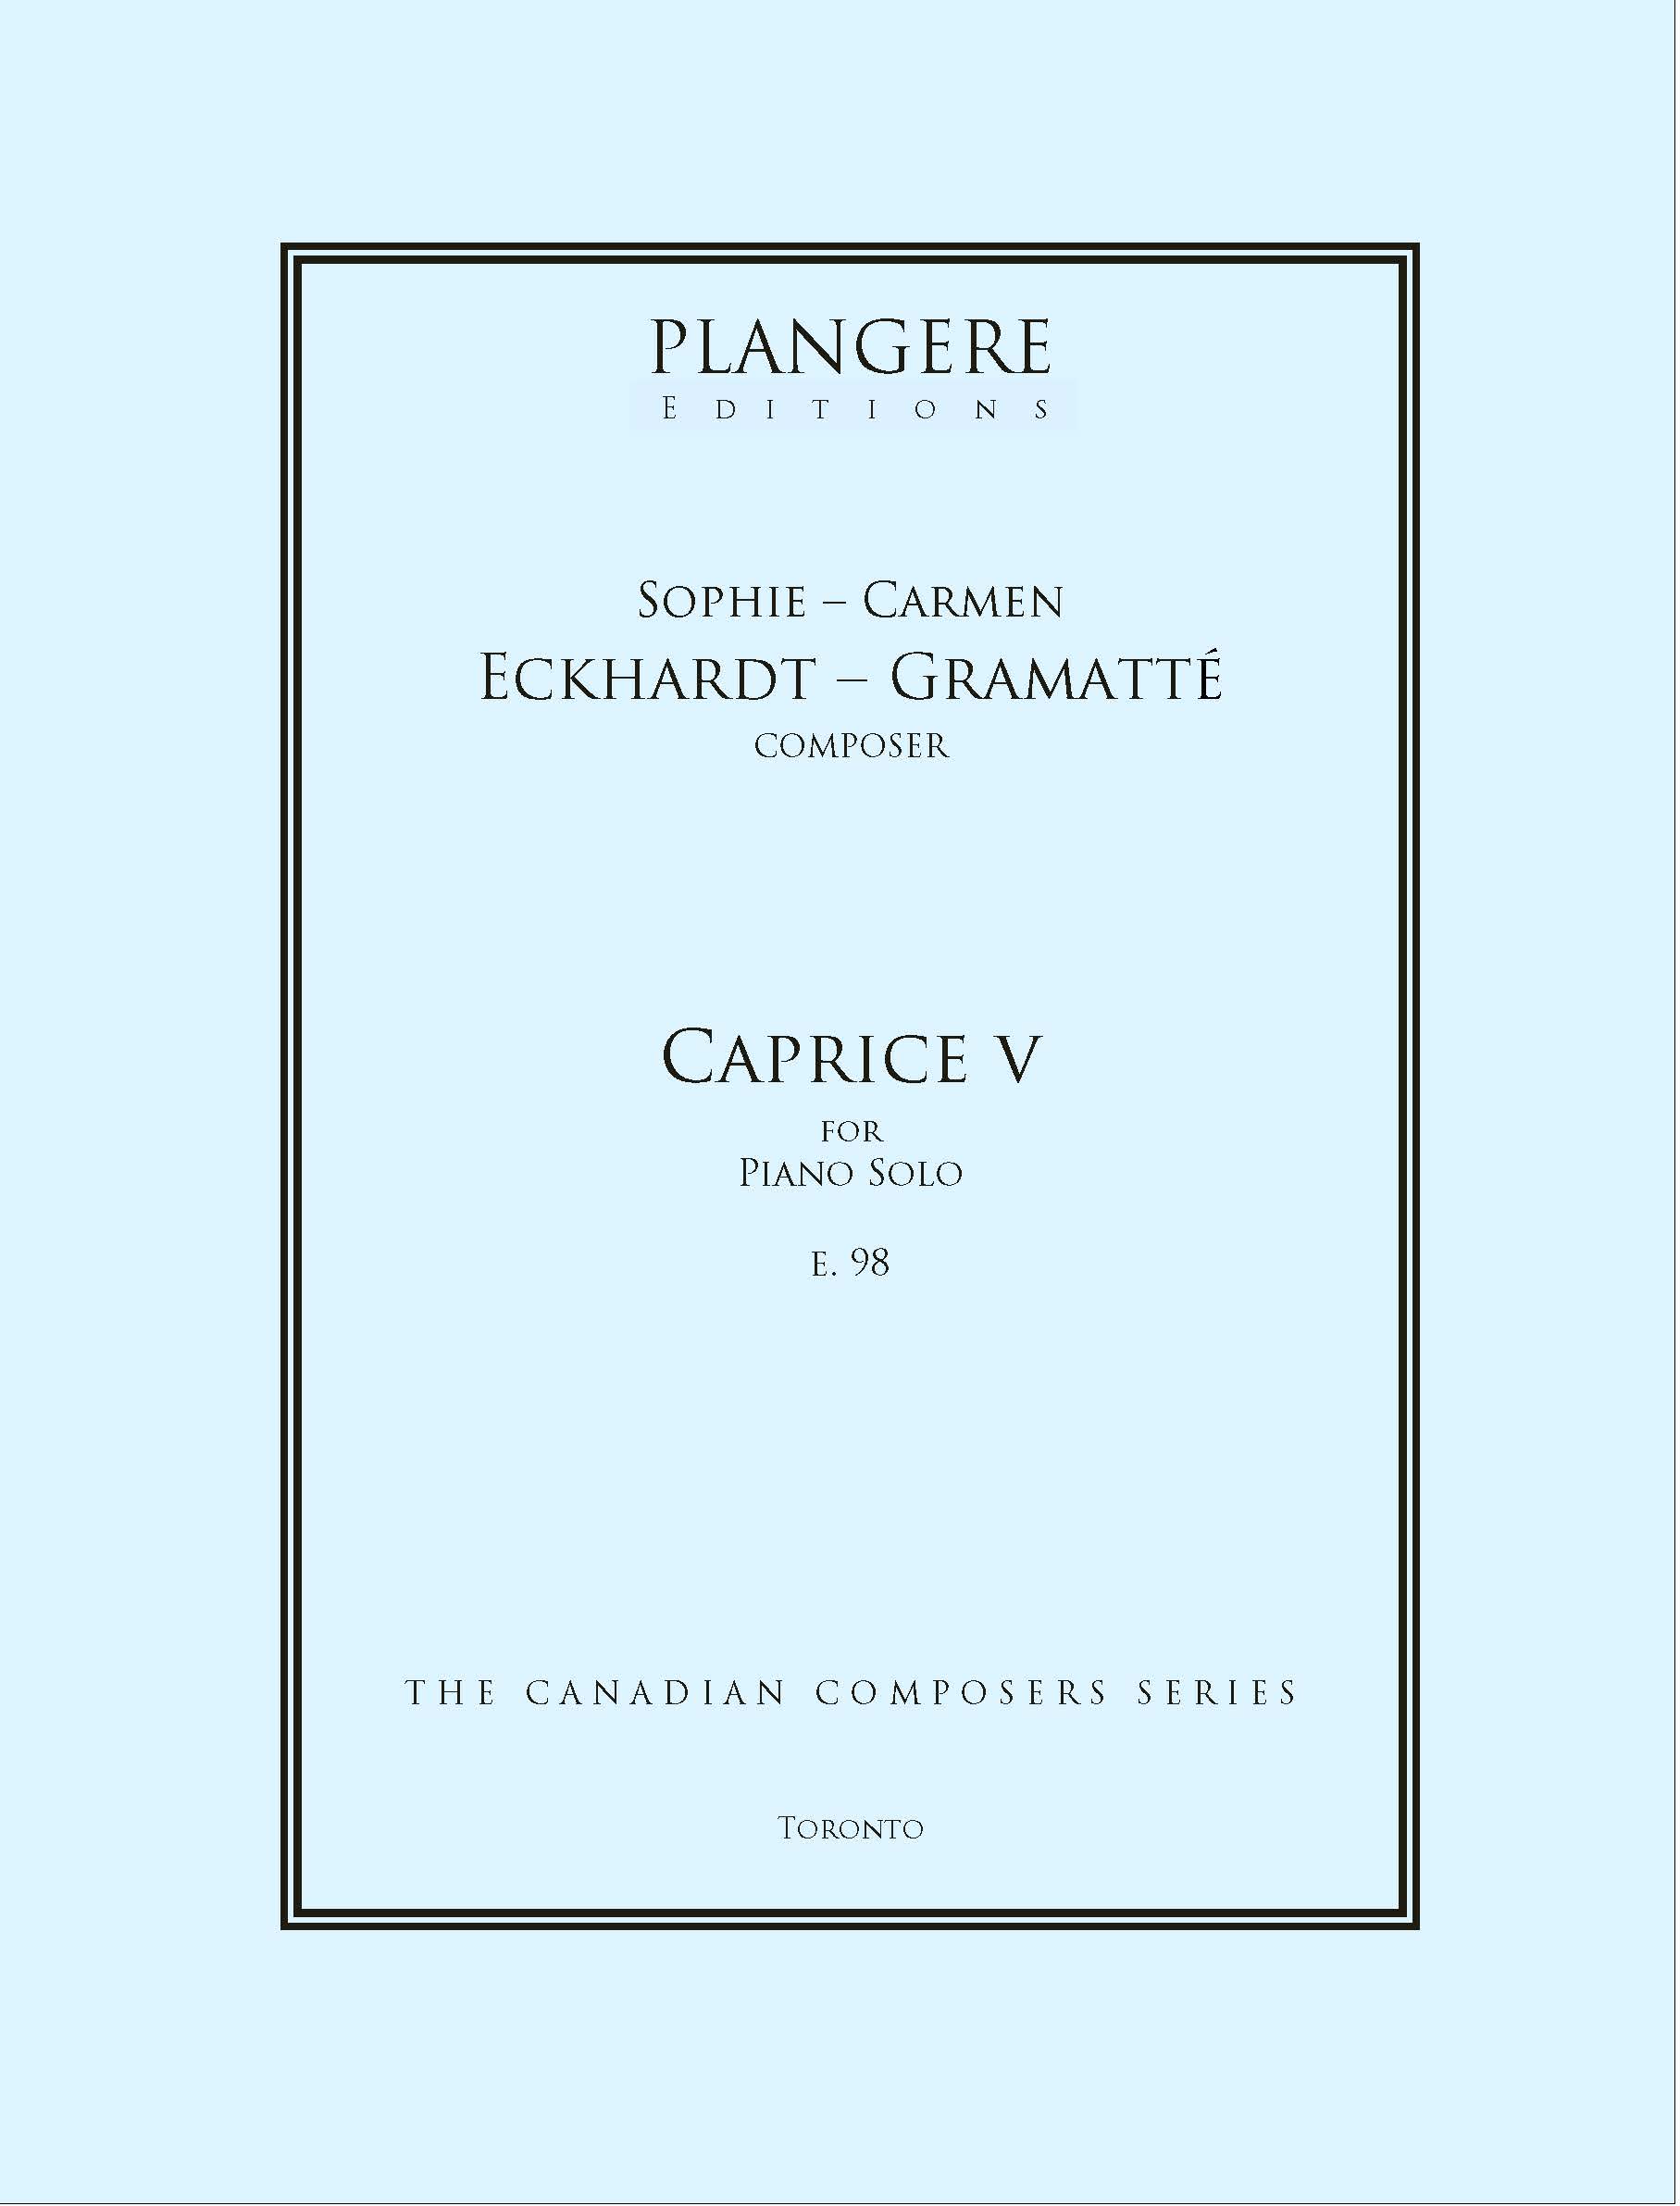 Sophie-Carmen Eckhardt- Gramatté    Caprice V for Piano   E.  98